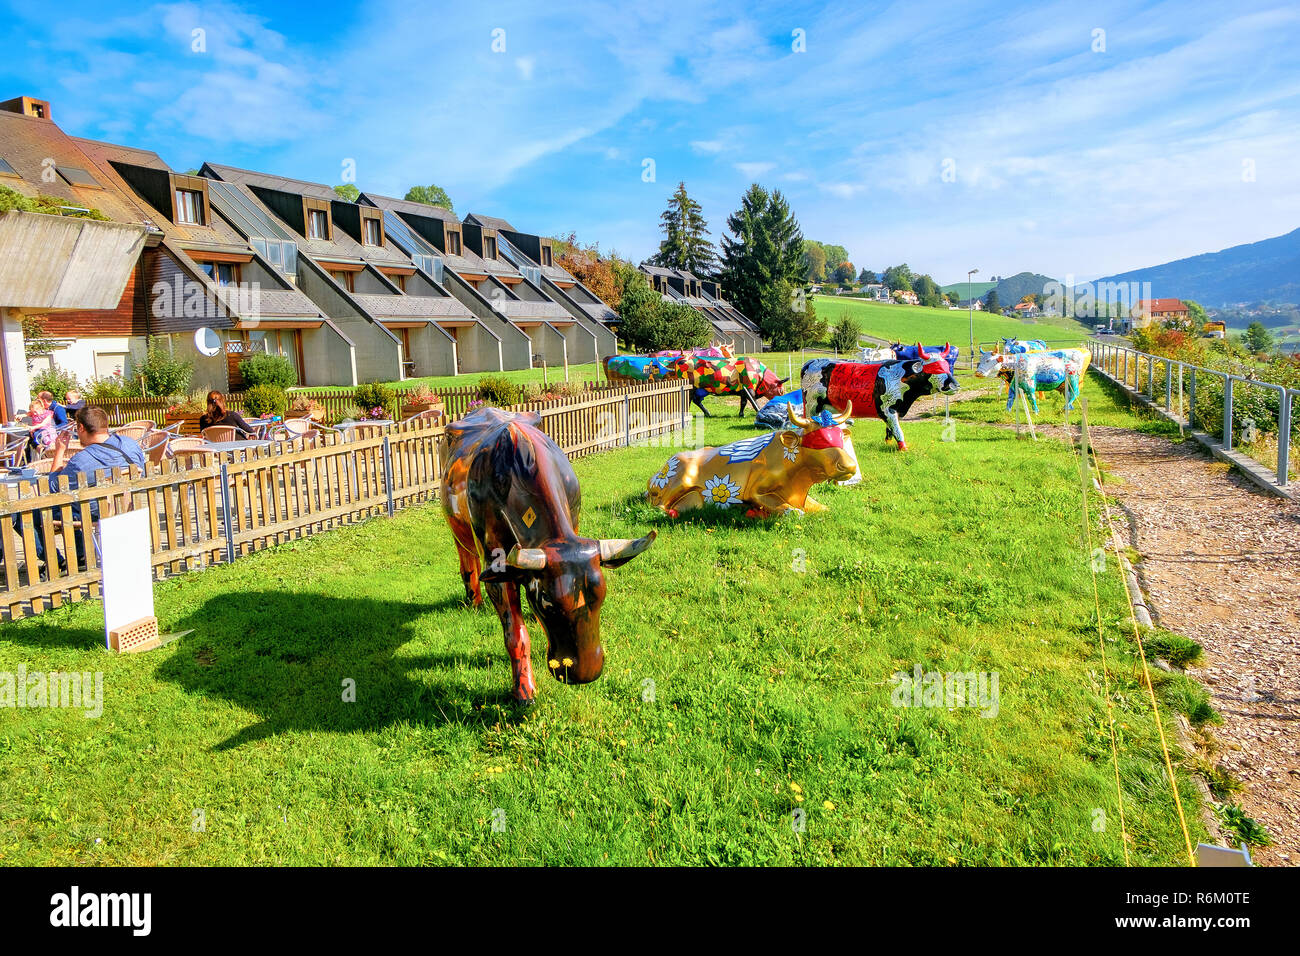 Paysage avec exposition de vaches peintes colorées au Motel de la Gruyère. Gruyère, Suisse Banque D'Images